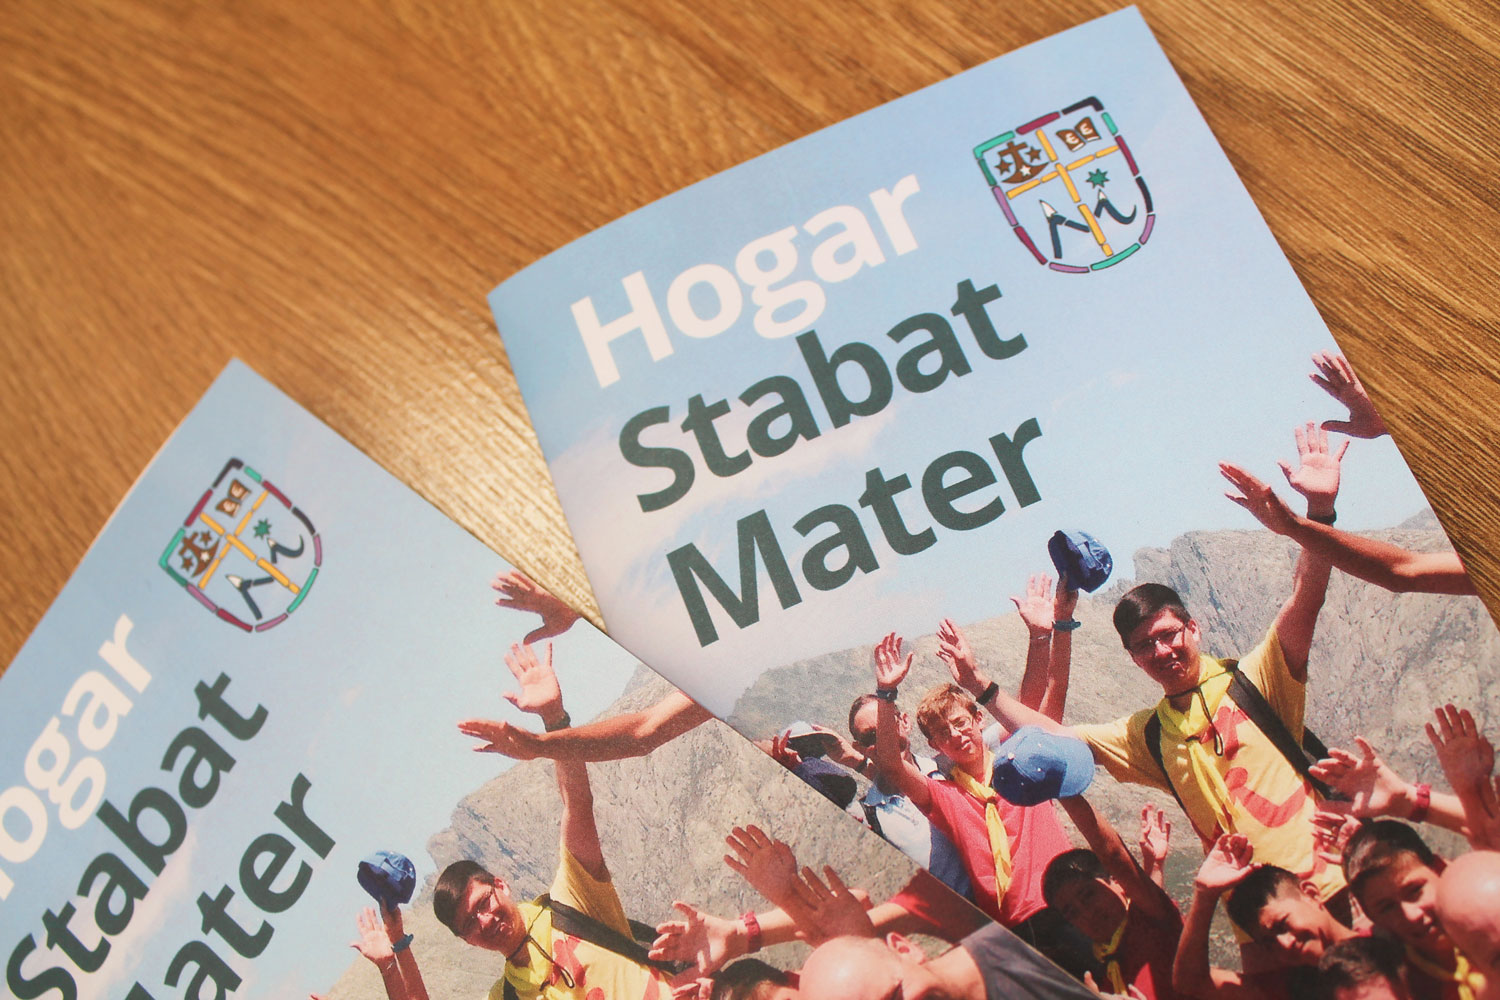 Folleto Campamento Hogar Stabat Mater 2017